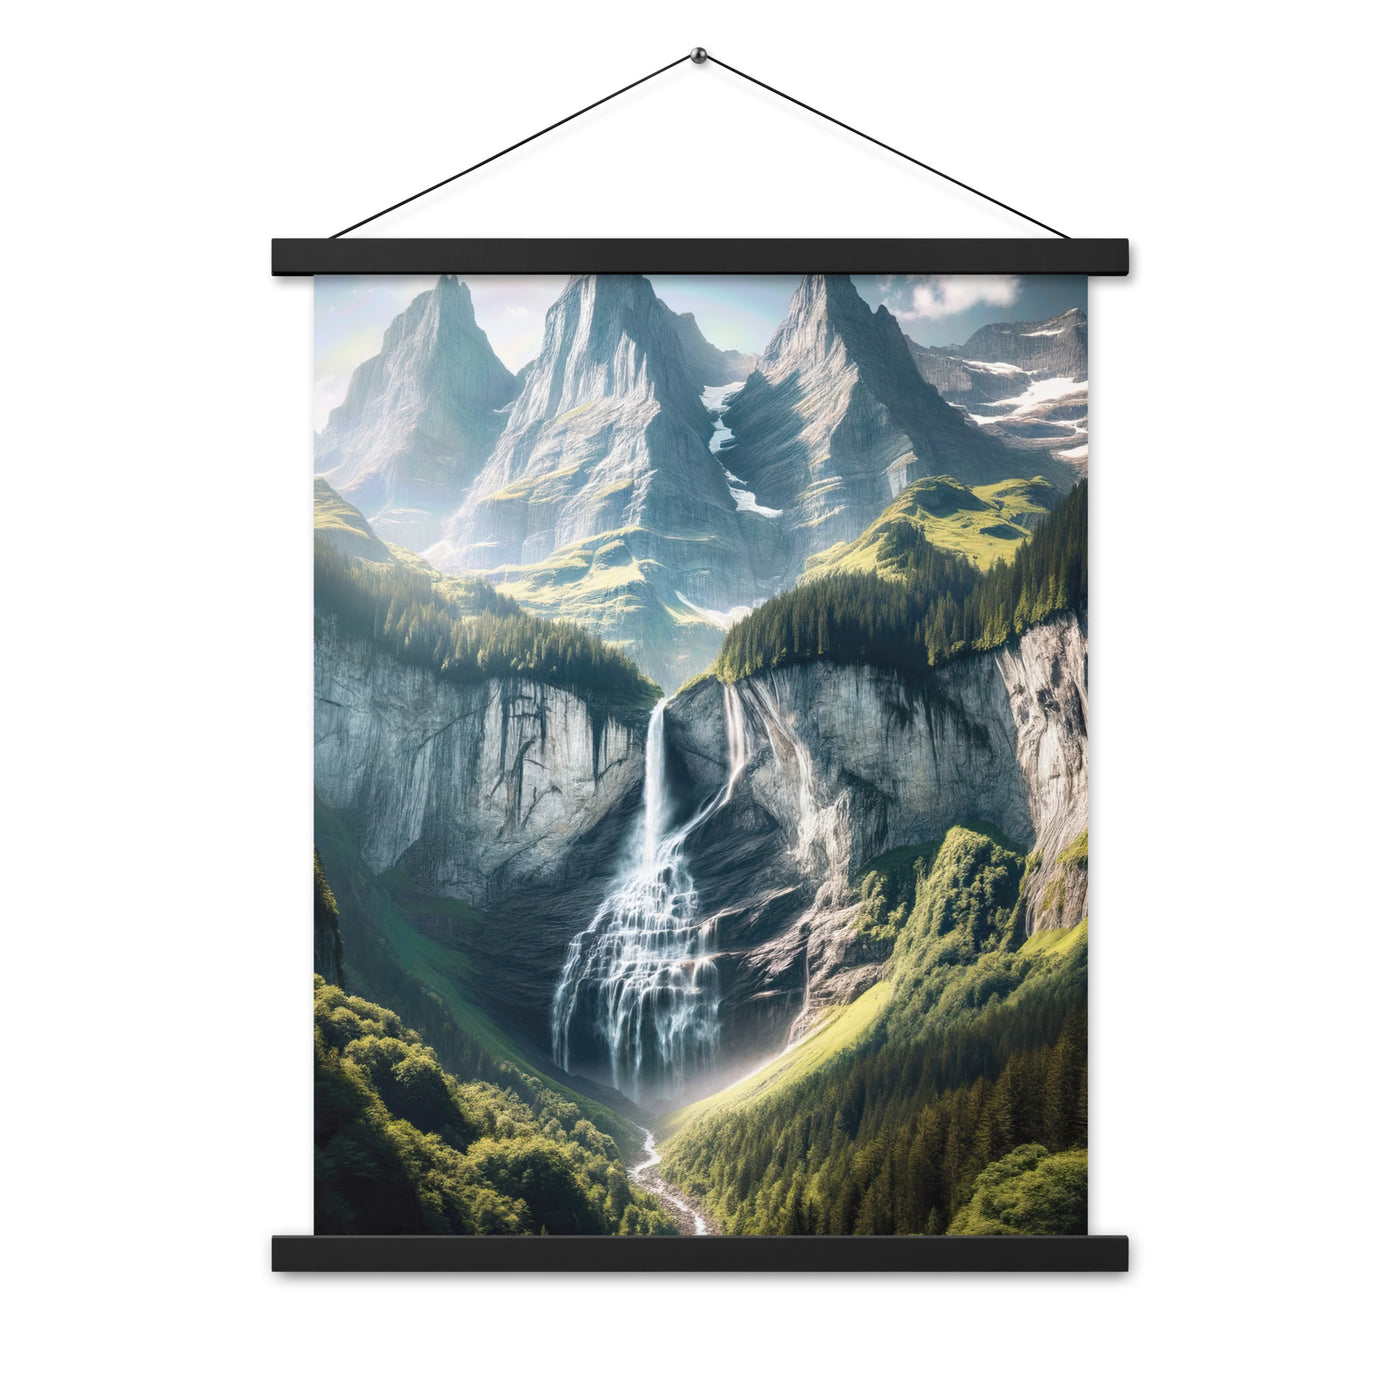 Foto der sommerlichen Alpen mit üppigen Gipfeln und Wasserfall - Premium Poster mit Aufhängung berge xxx yyy zzz 45.7 x 61 cm